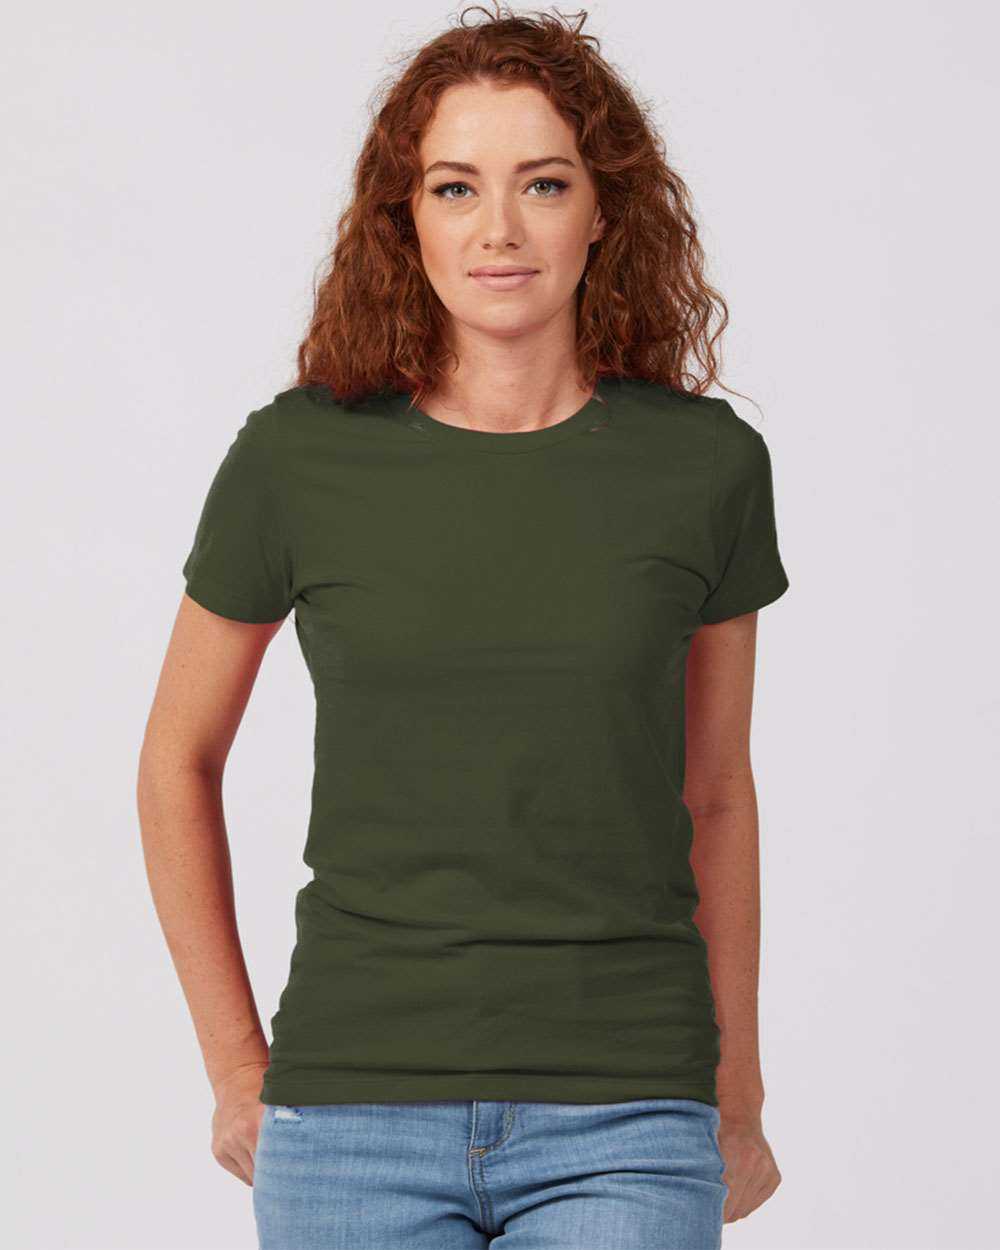 Tultex 516 Women&#39;s Premium Cotton T-Shirt - Olive - HIT a Double